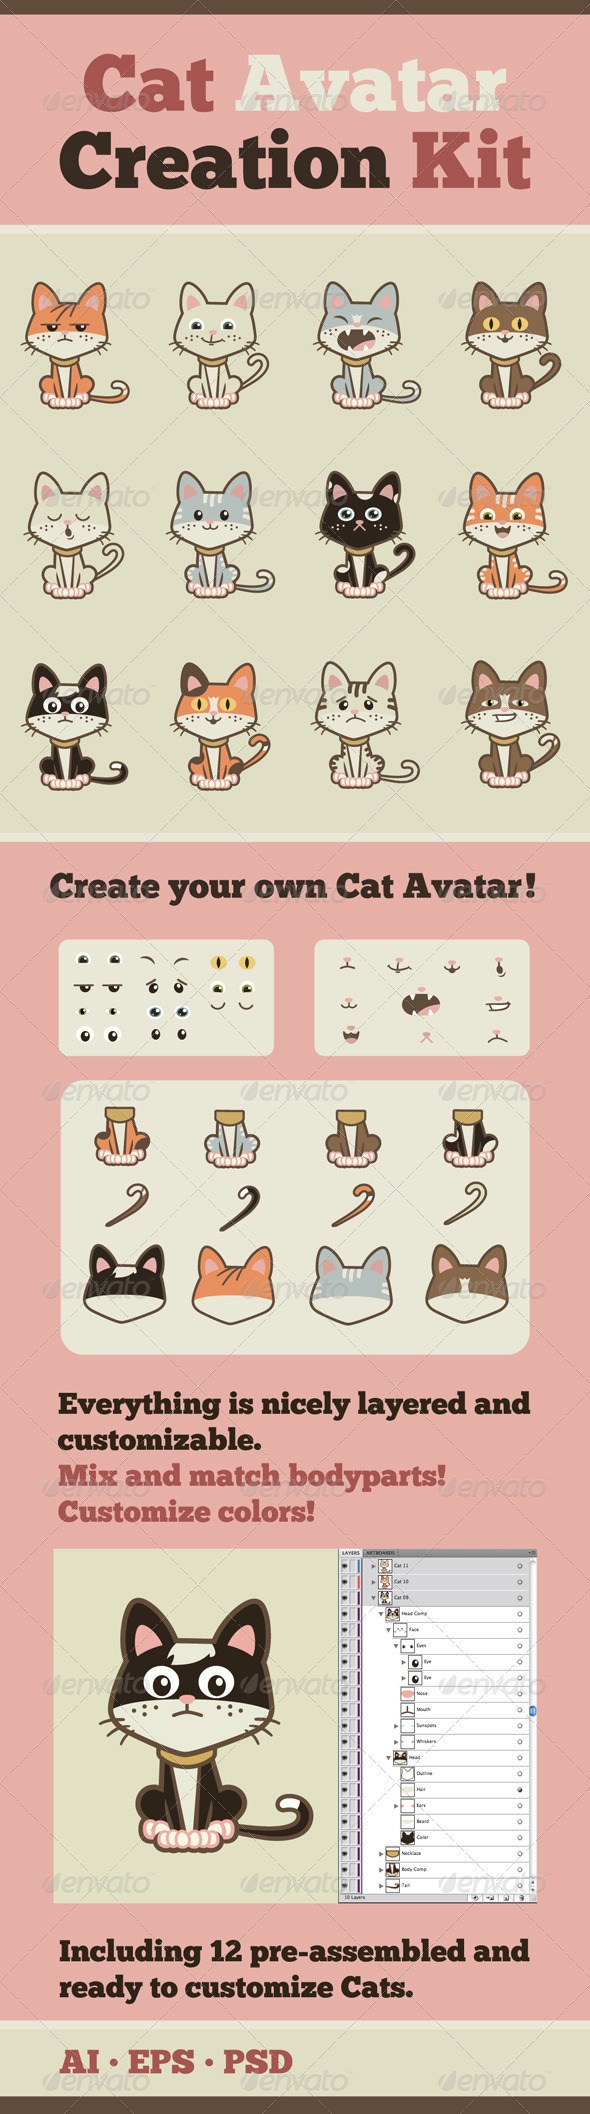 cat_avatar_creation_kit_2555318